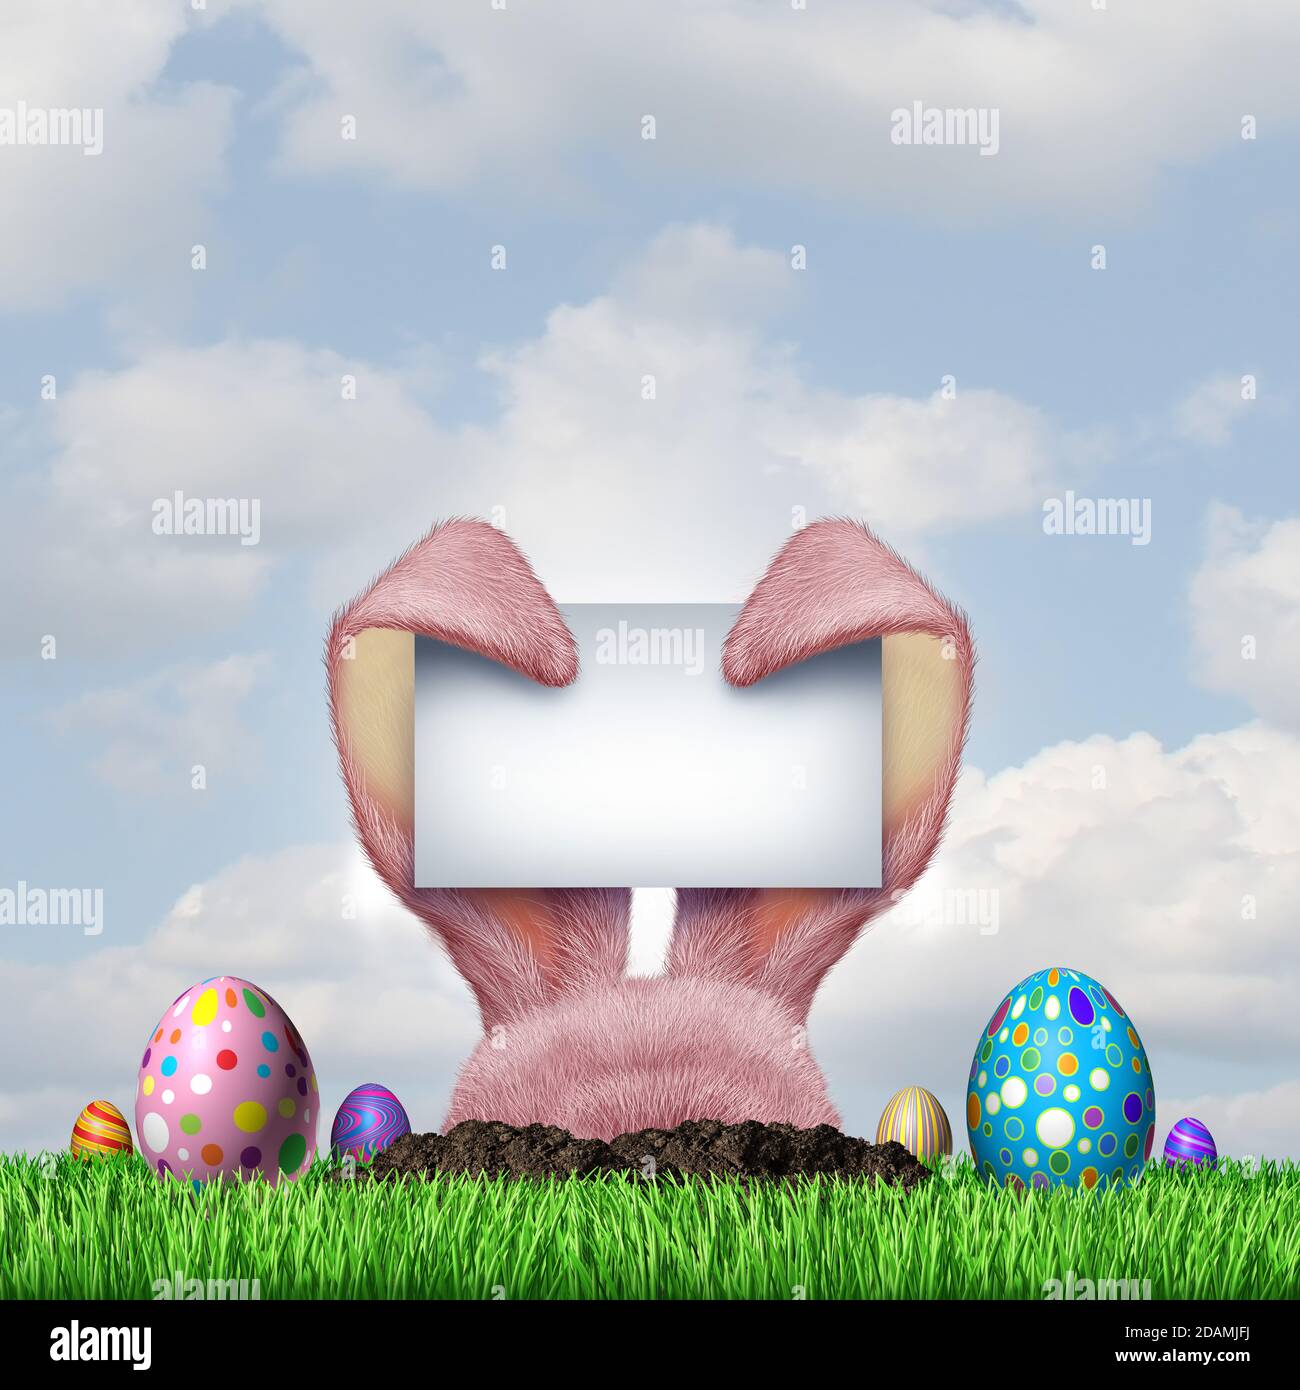 Le panneau vierge de la chasse aux œufs du lapin de Pâques et les joyeuses fêtes de printemps sont une fête amusante en avril avec des œufs décorés sur l'herbe. Banque D'Images